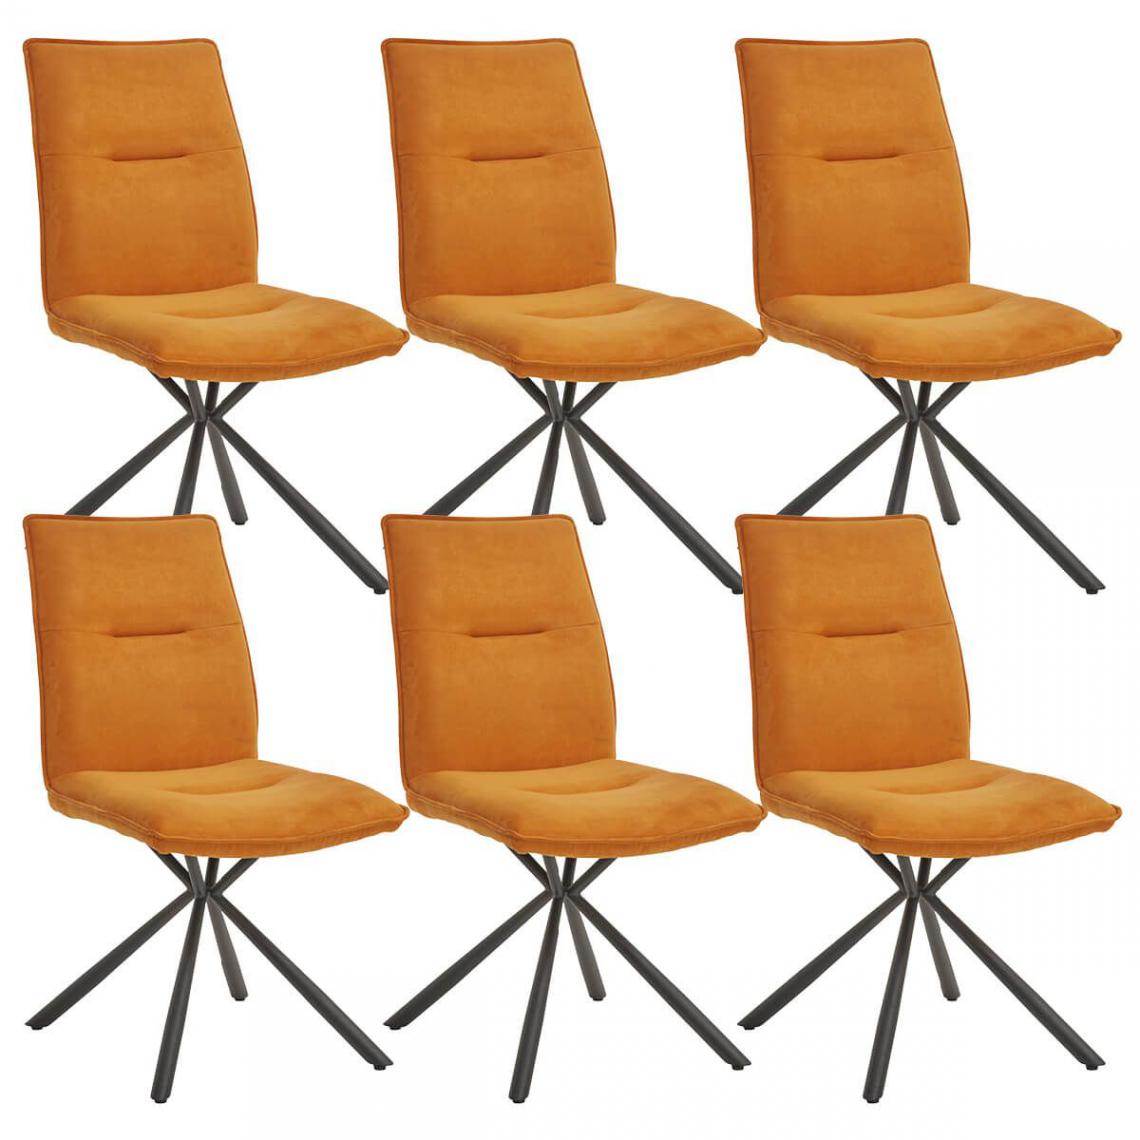 Altobuy - JULIANE - Lot de 6 Chaises Tissu Orange Piètement Etoile - Chaises